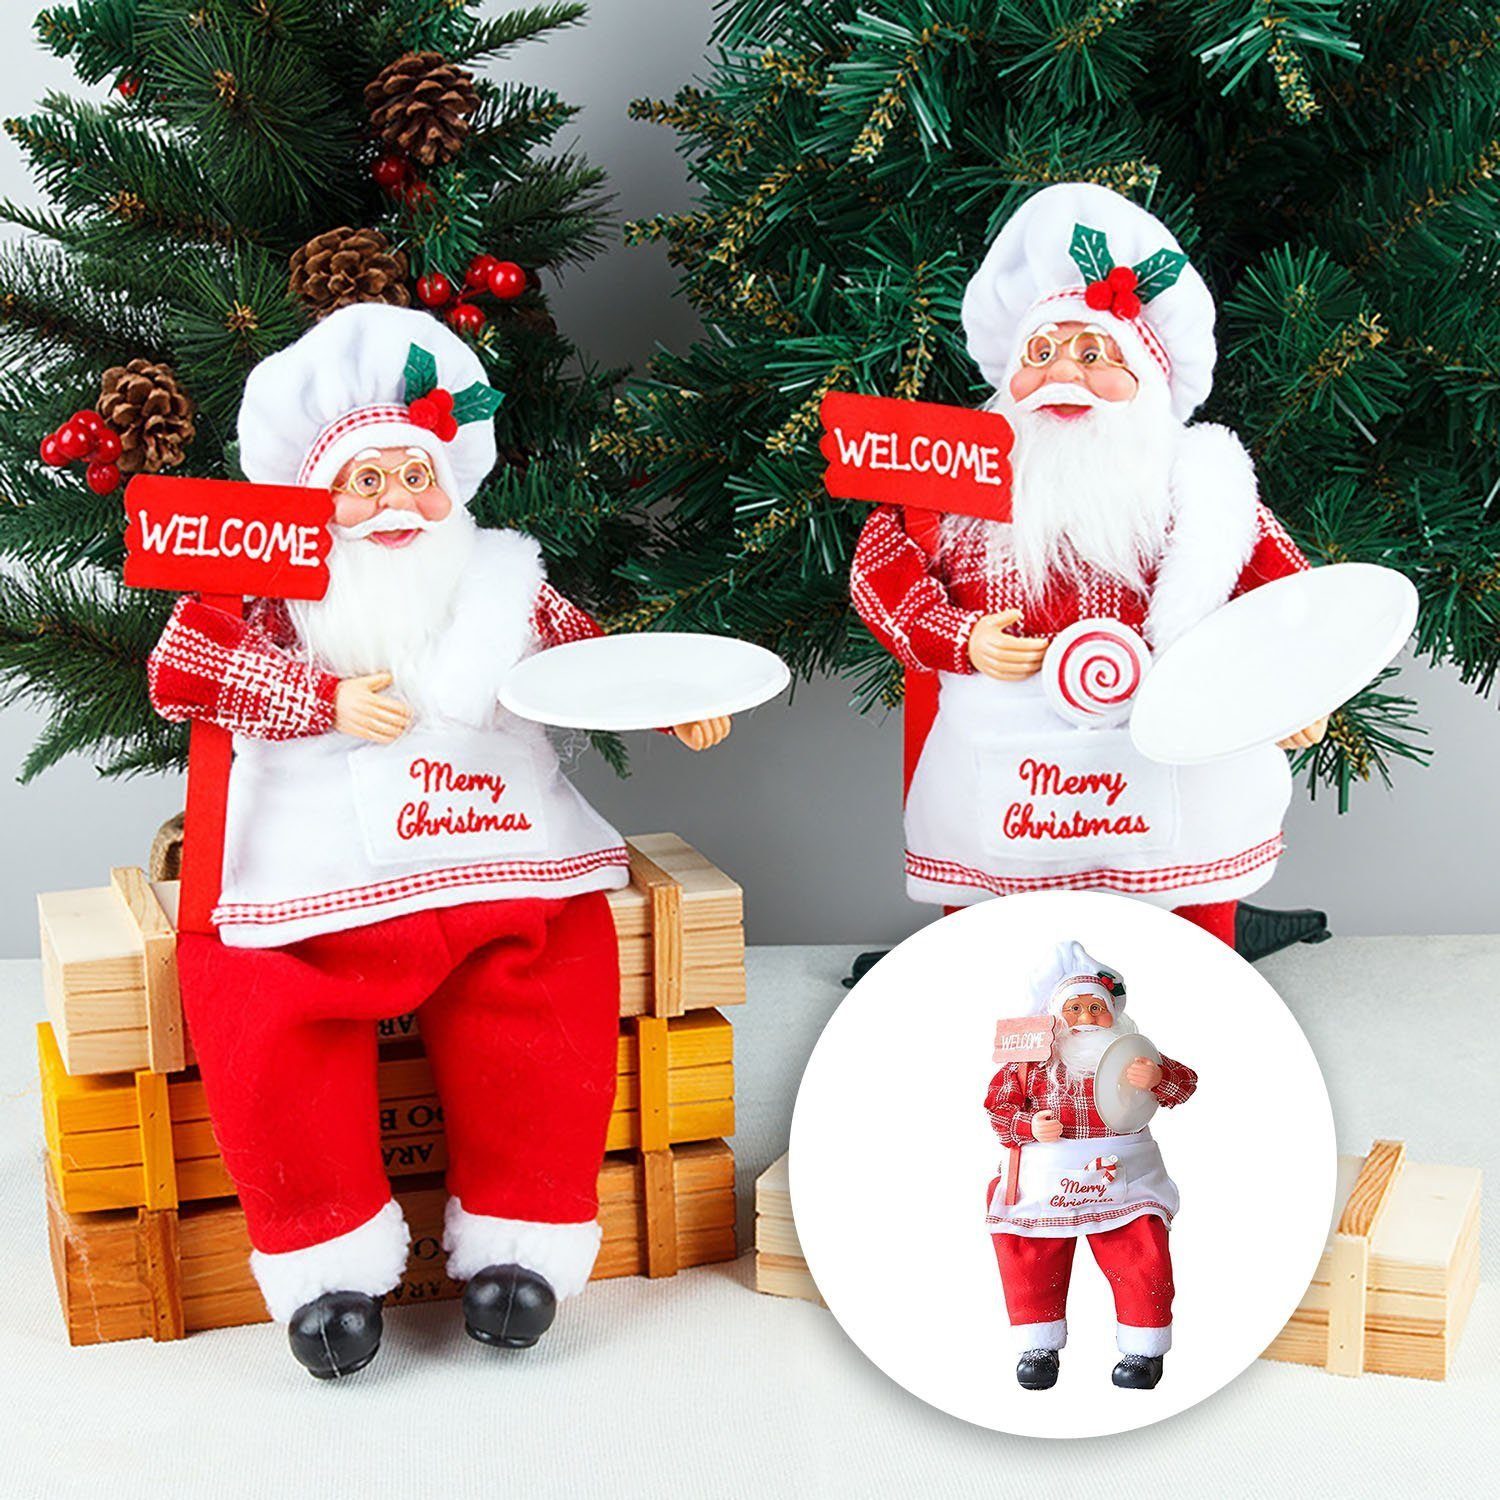 MAGICSHE Weihnachtsmann Puppe Weihnachten Figurinen Weihnachtsdekoration Dekorationen, Sitzen Chef